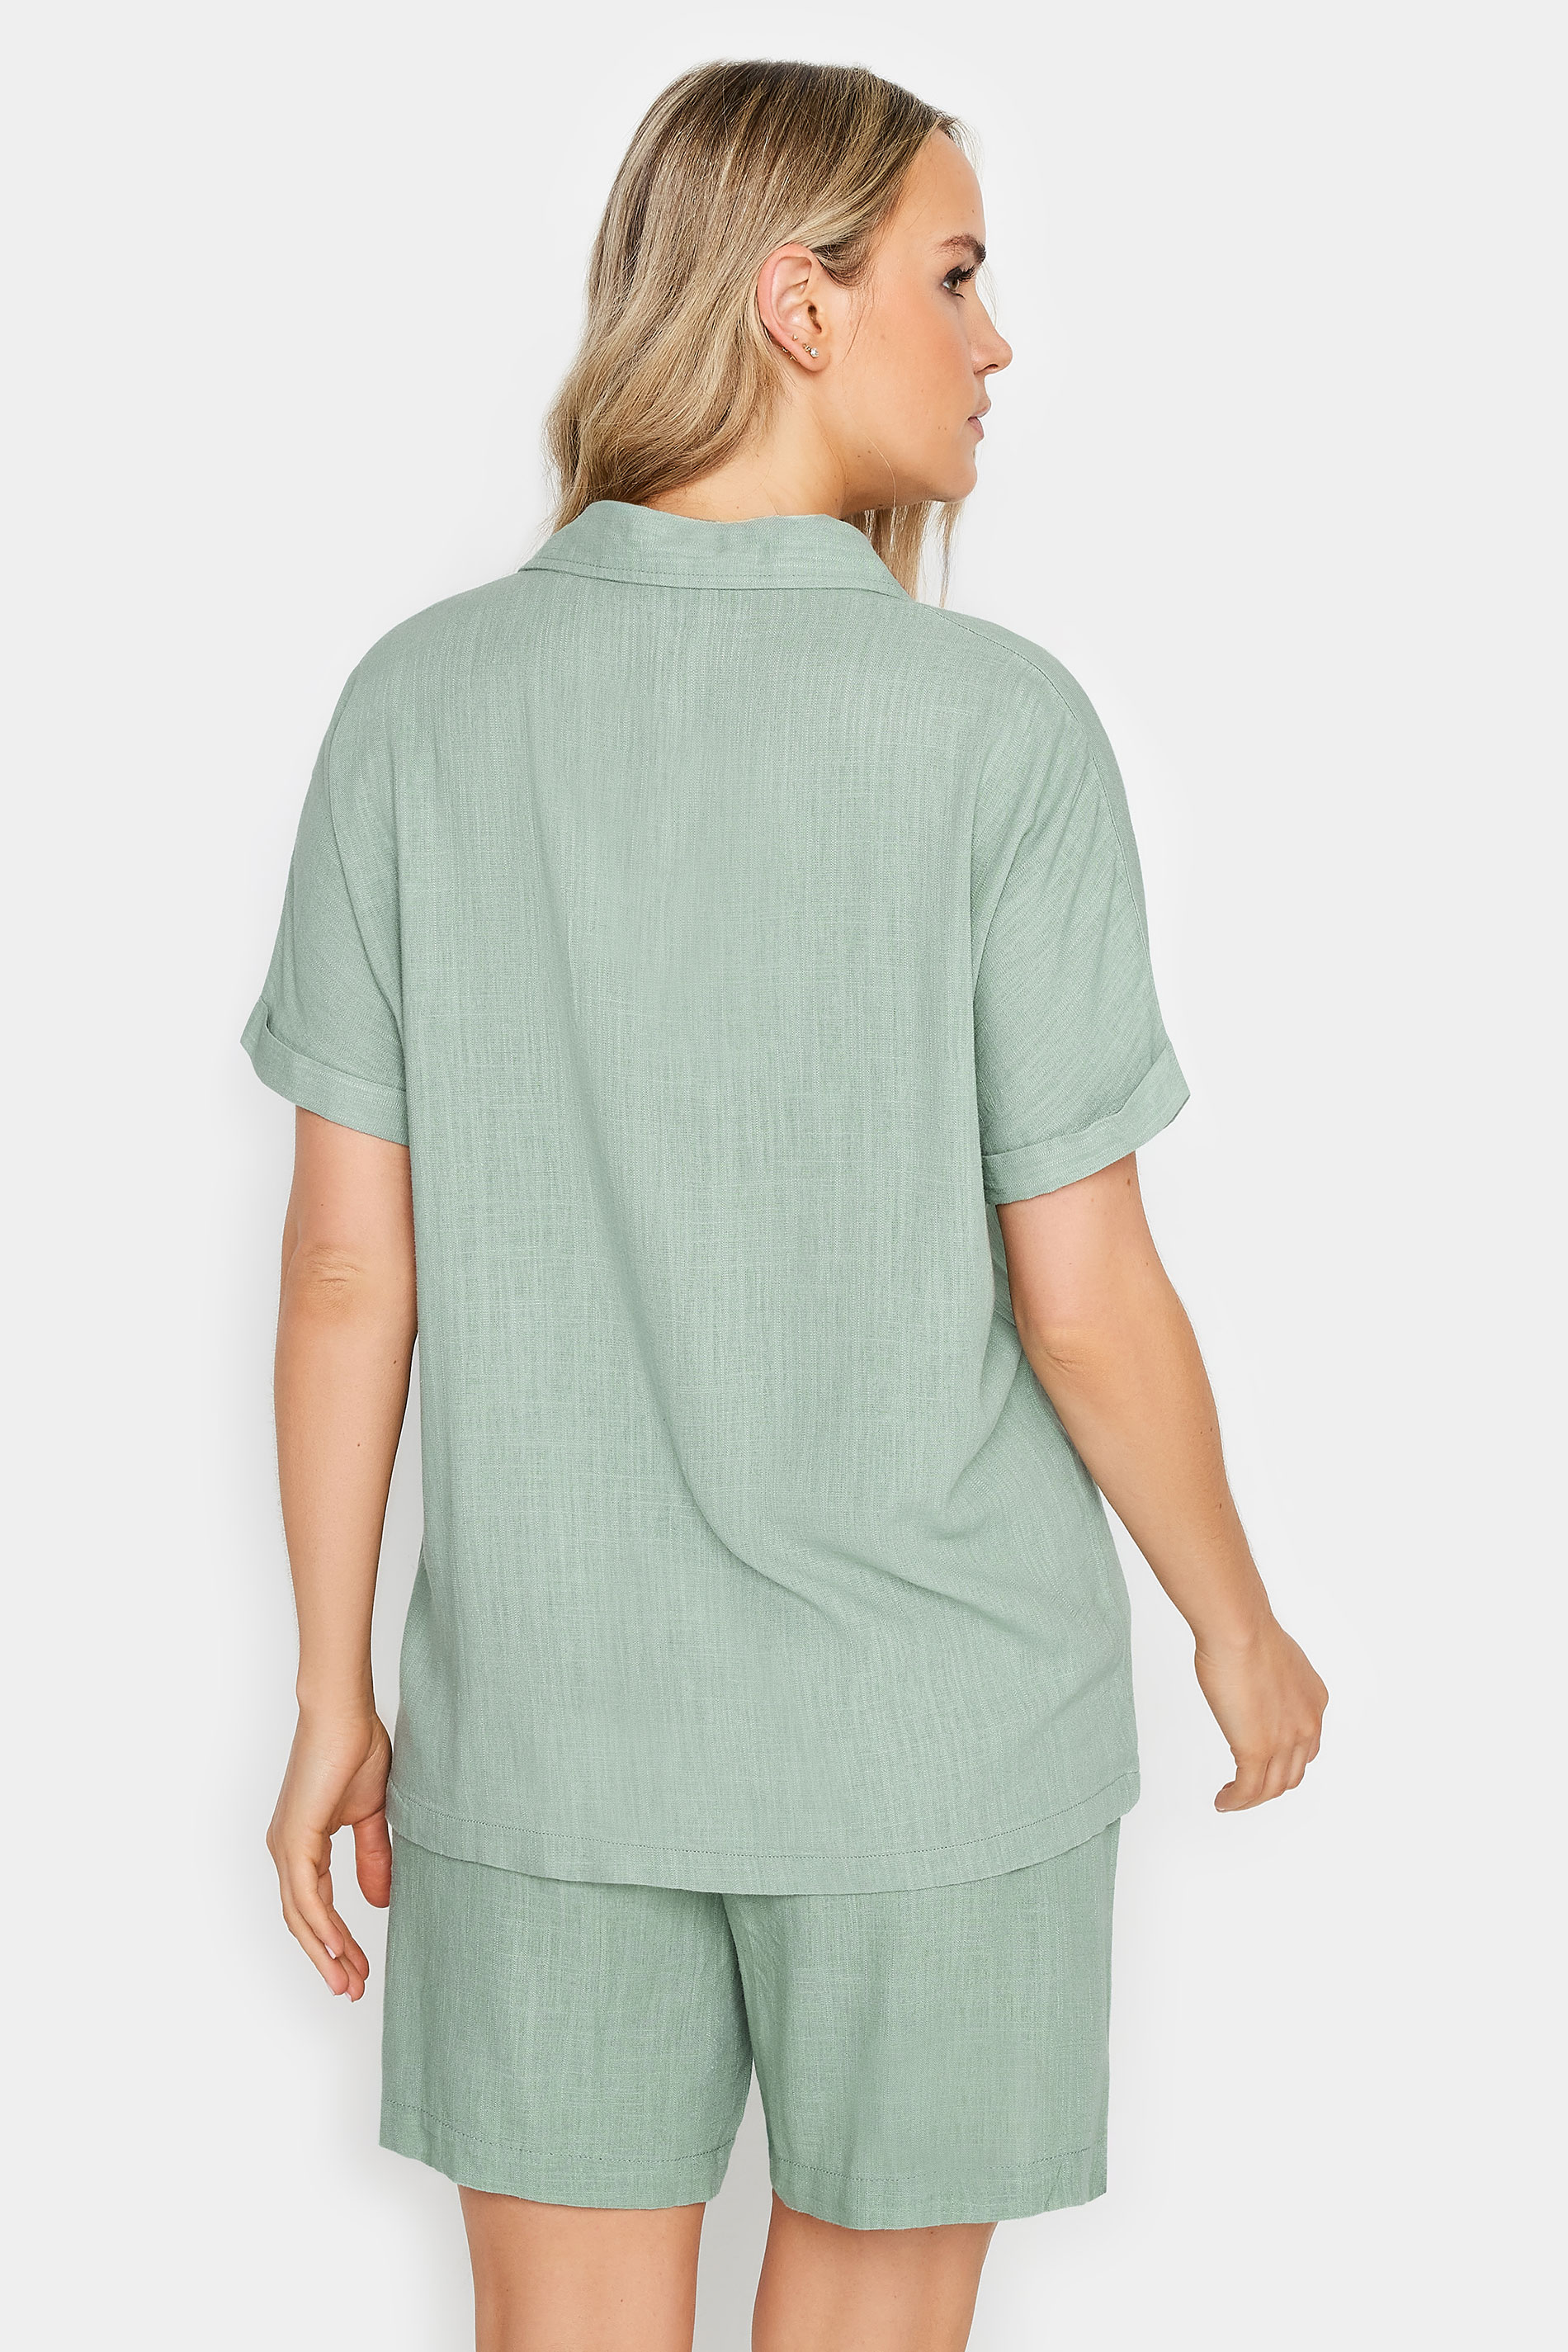 LTS Tall Womens Sage Green Linen Short Sleeve Shirt | Long Tall Sally 3